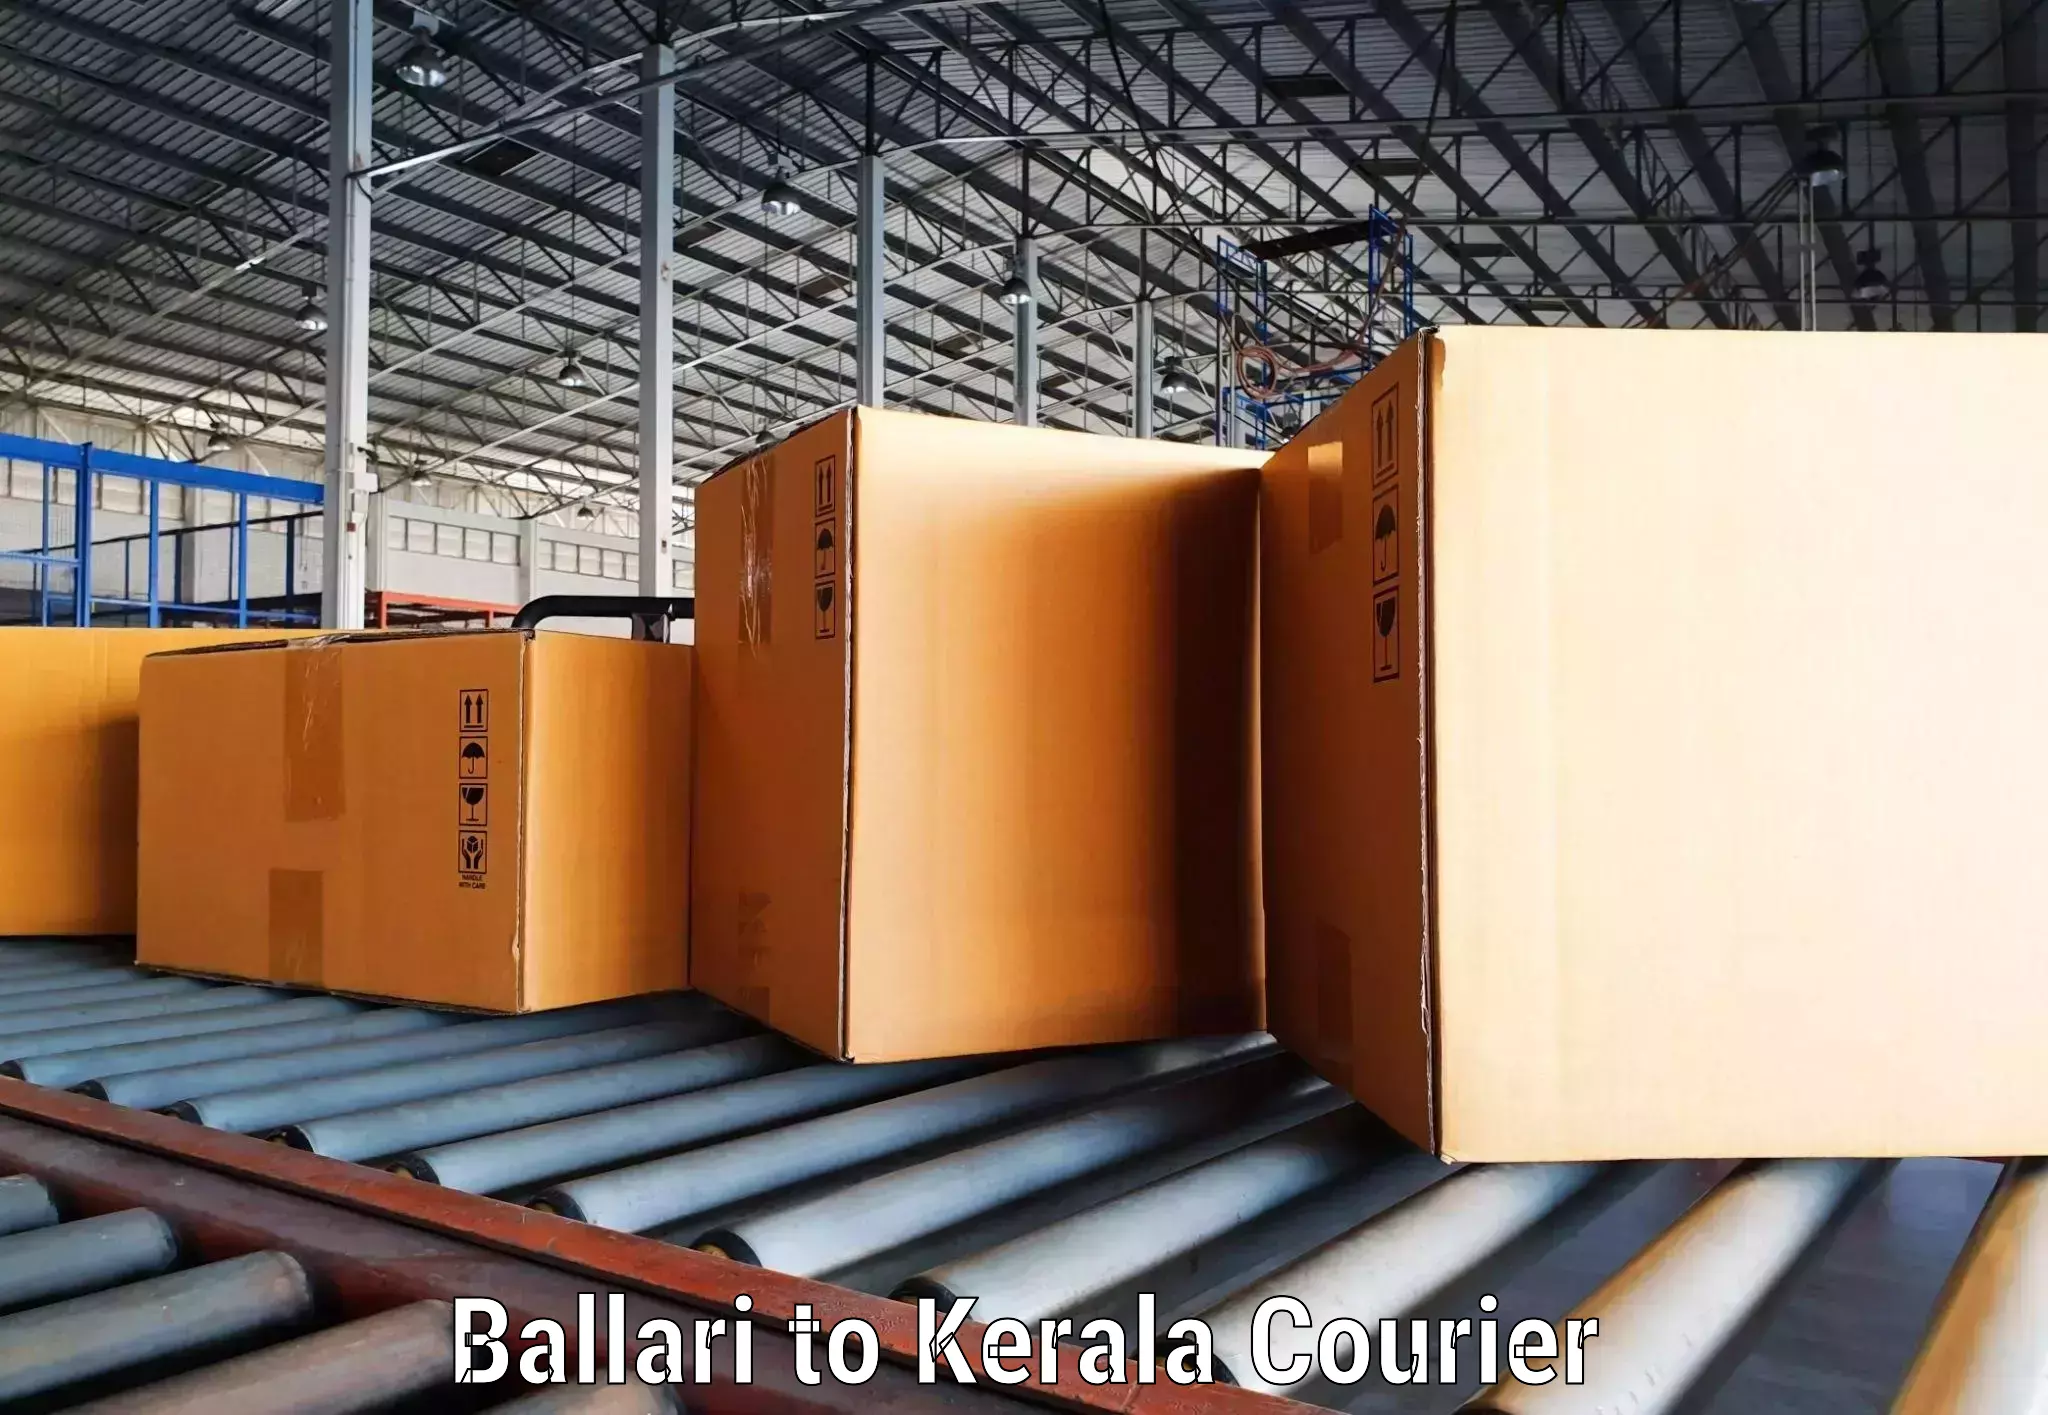 Global shipping networks Ballari to Panthalam